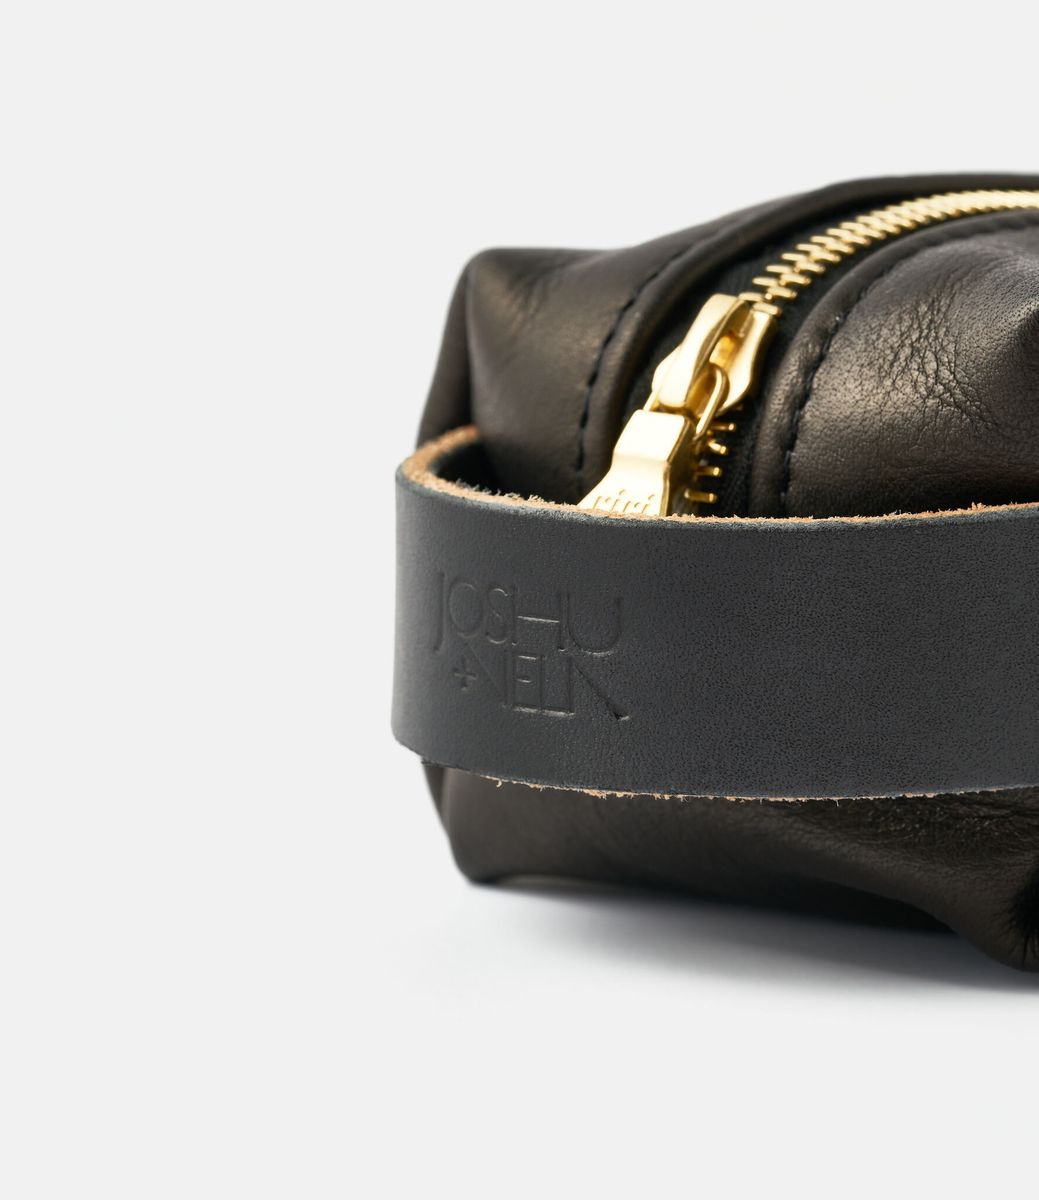 Joshu+Vela Dopp Kit in Leather Small Black — несессер из кожи